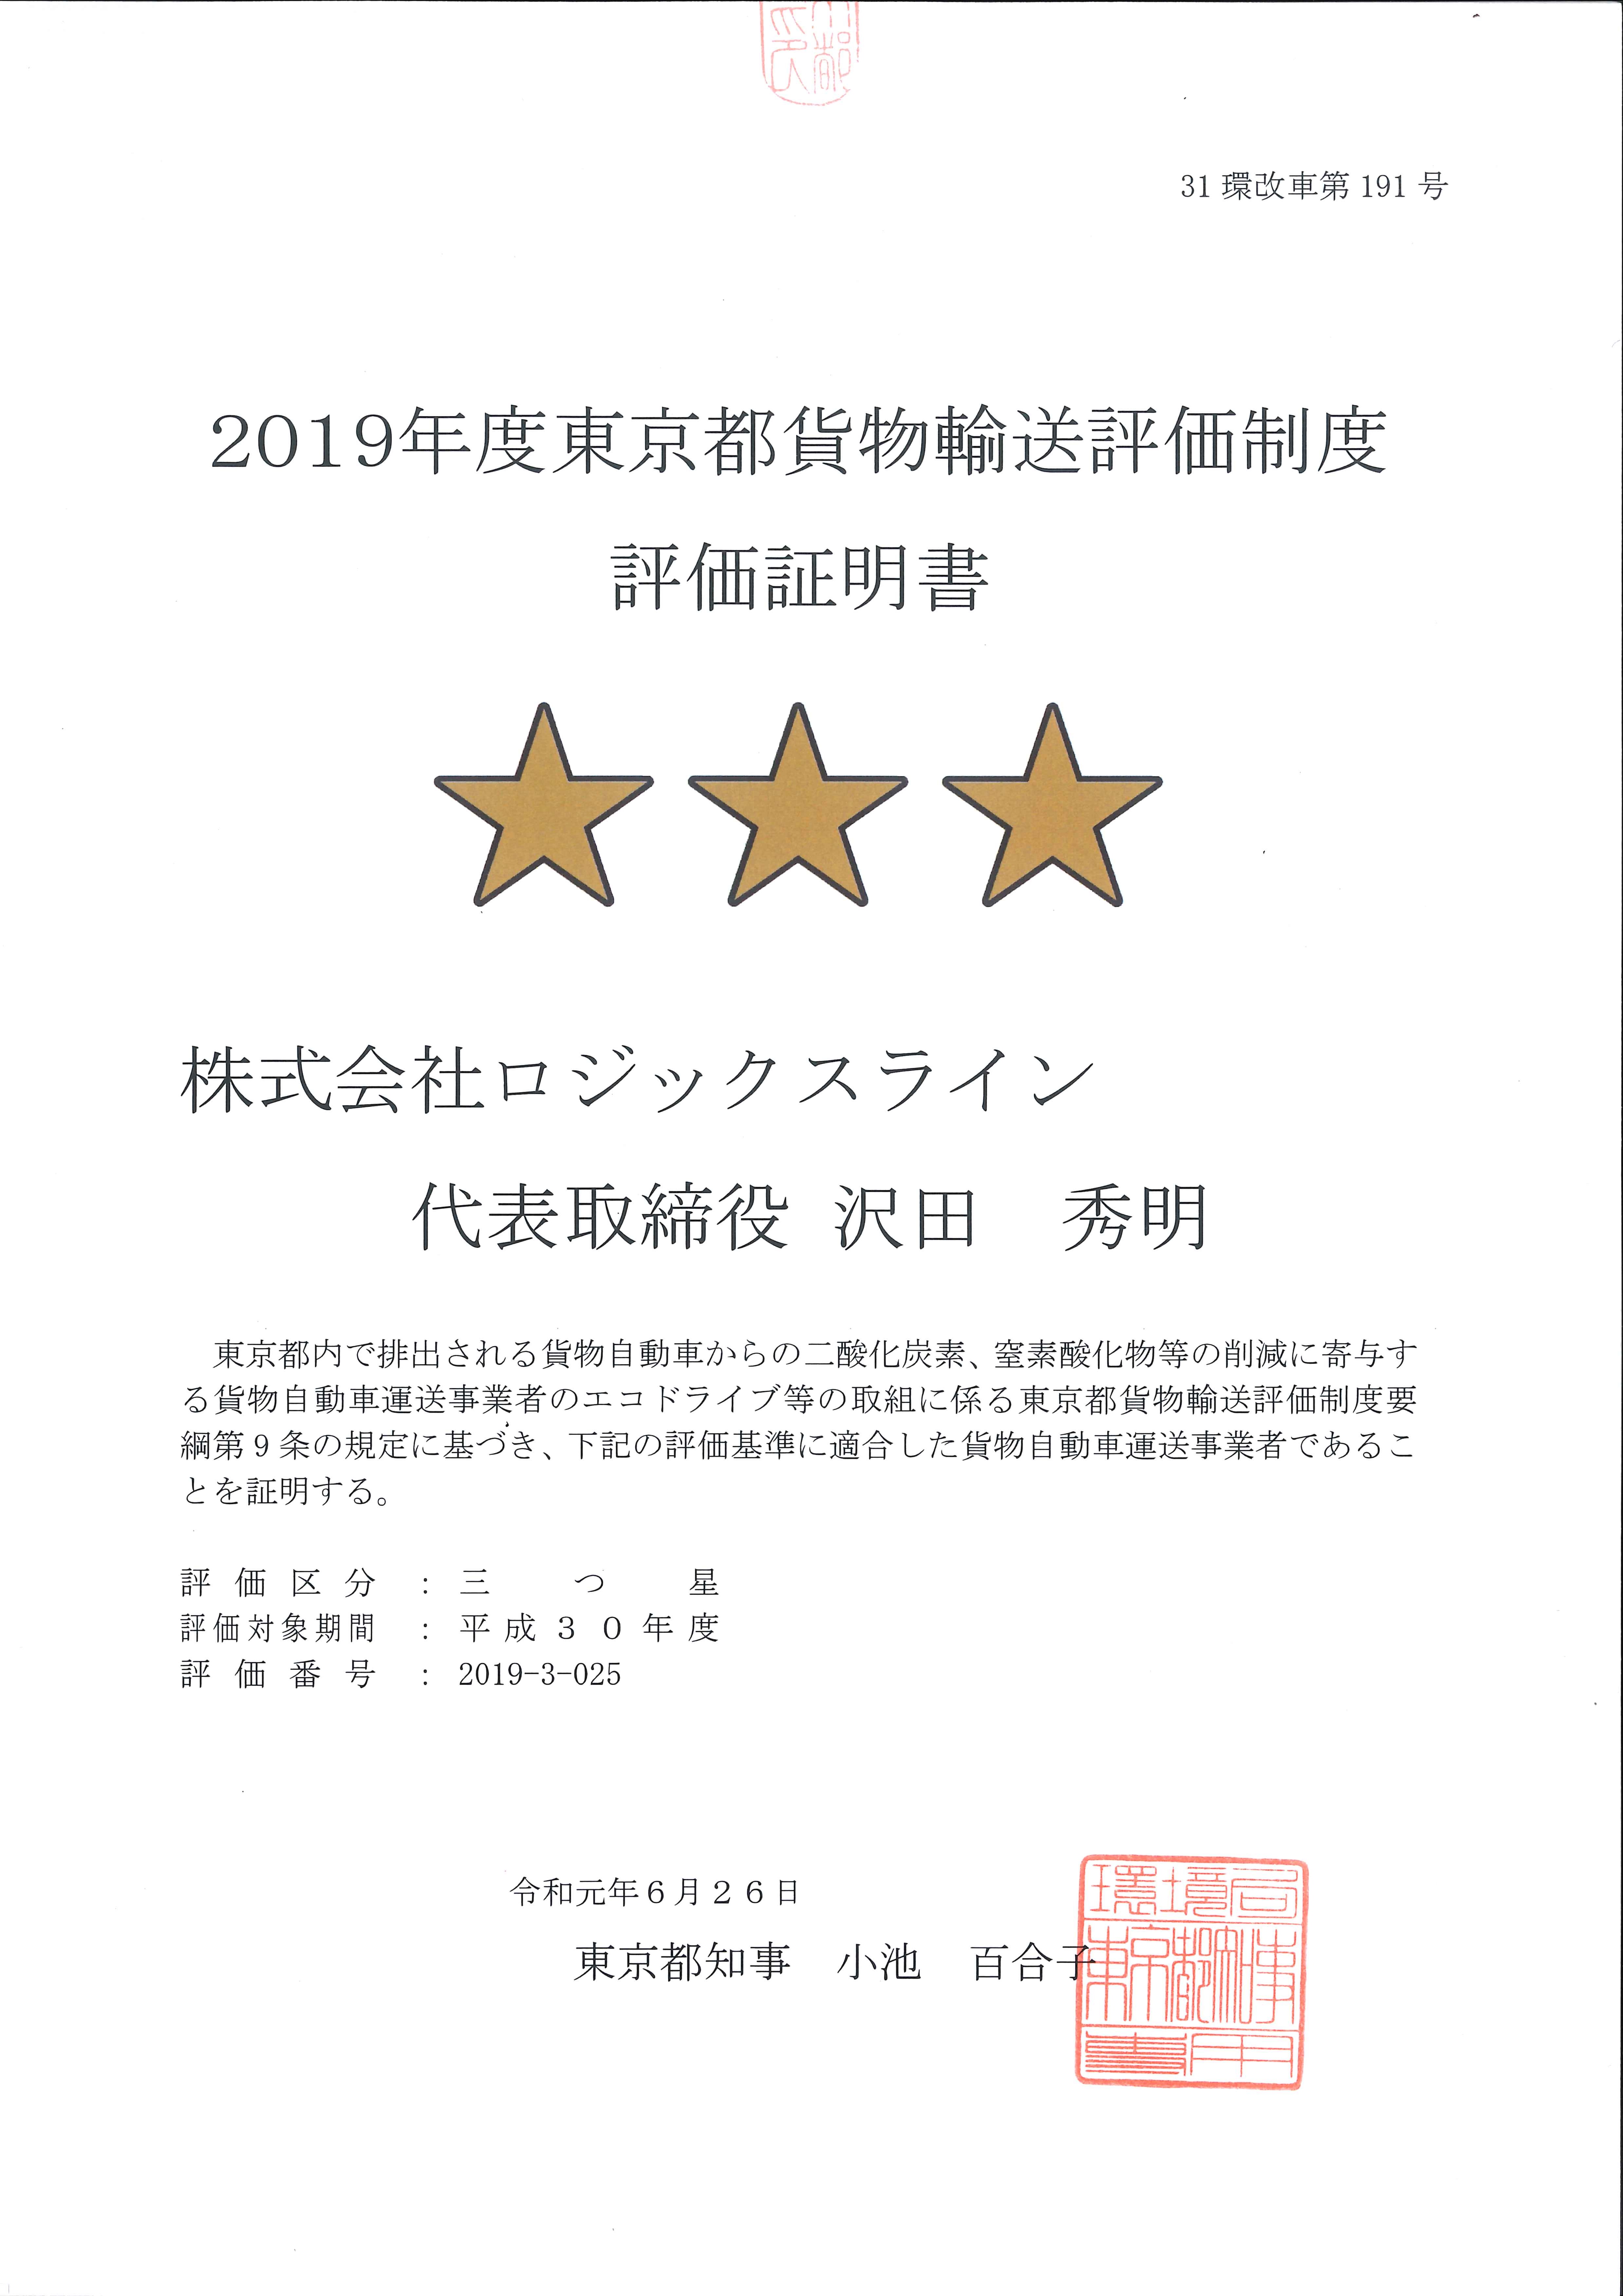 東京都貨物輸送評価制度評価証明書